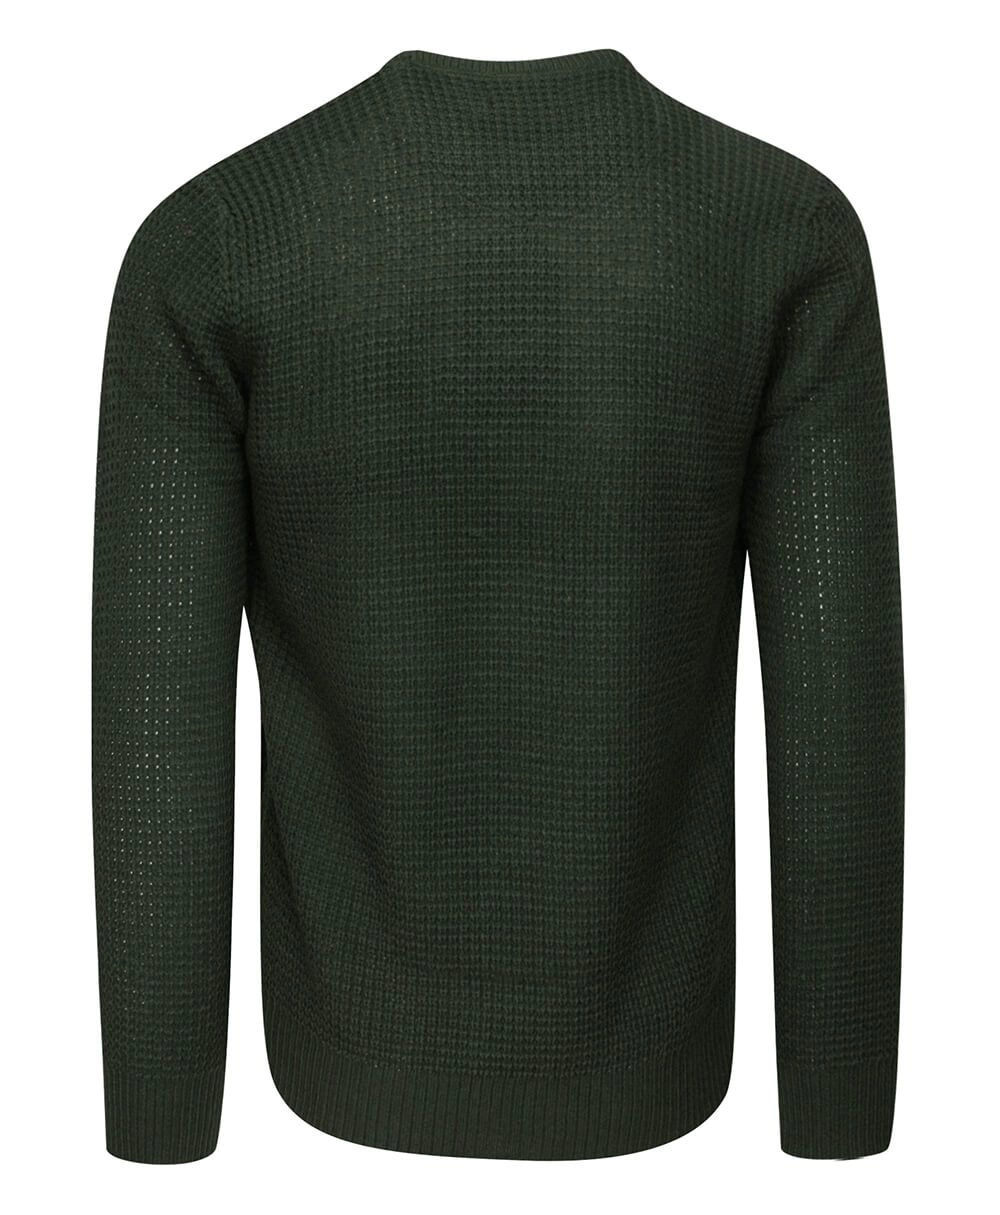 Sweter Zielony, Khaki w Gruby Dziergany Splot, U-neck, Męski -BRAVE SOUL